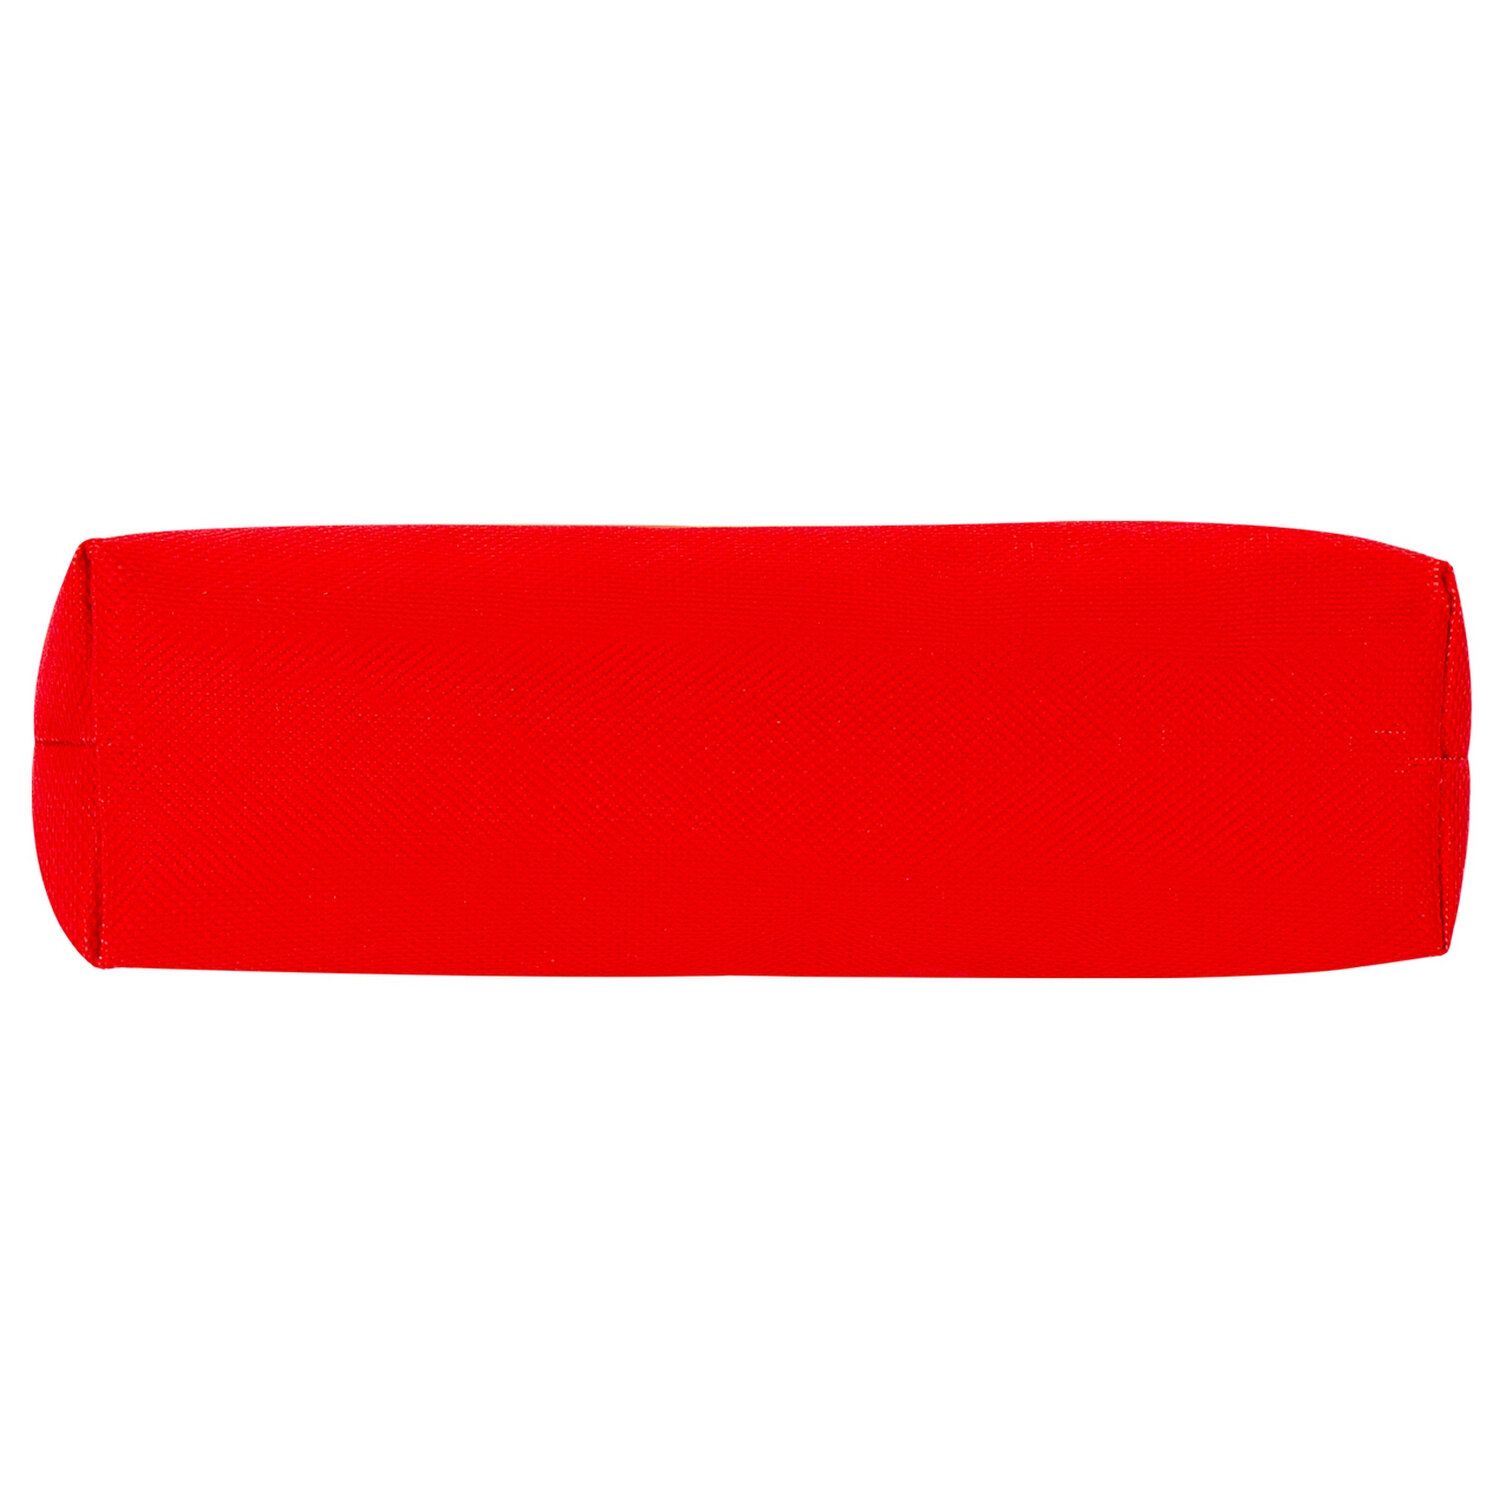 Пенал-тубус ПИФАГОР на молнии, текстиль, красный, 20х5 см, 104387